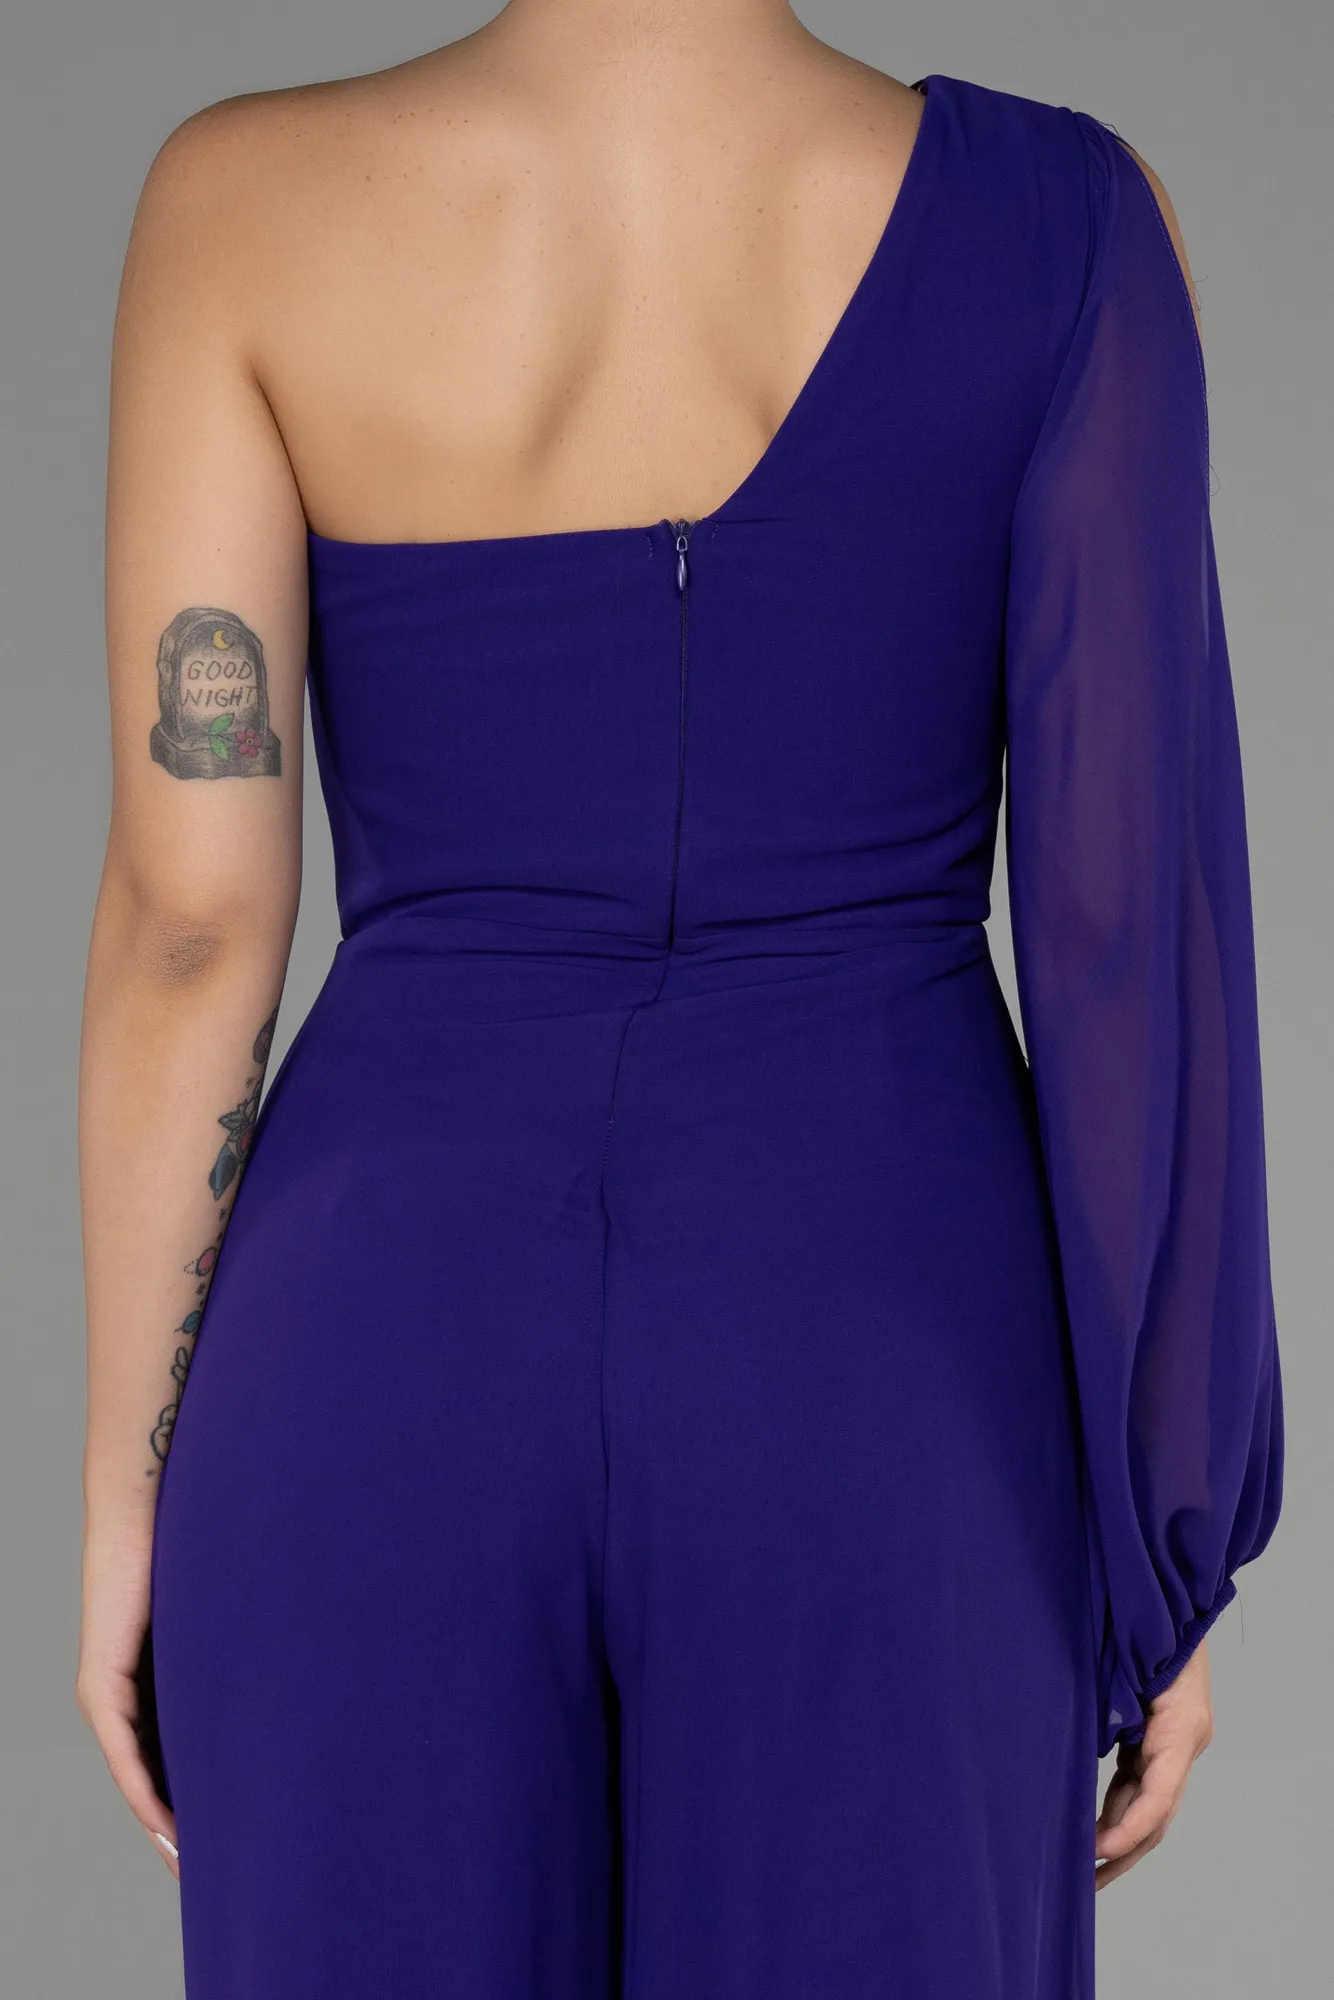 Purple-Long Chiffon Invitation Dress ABT078